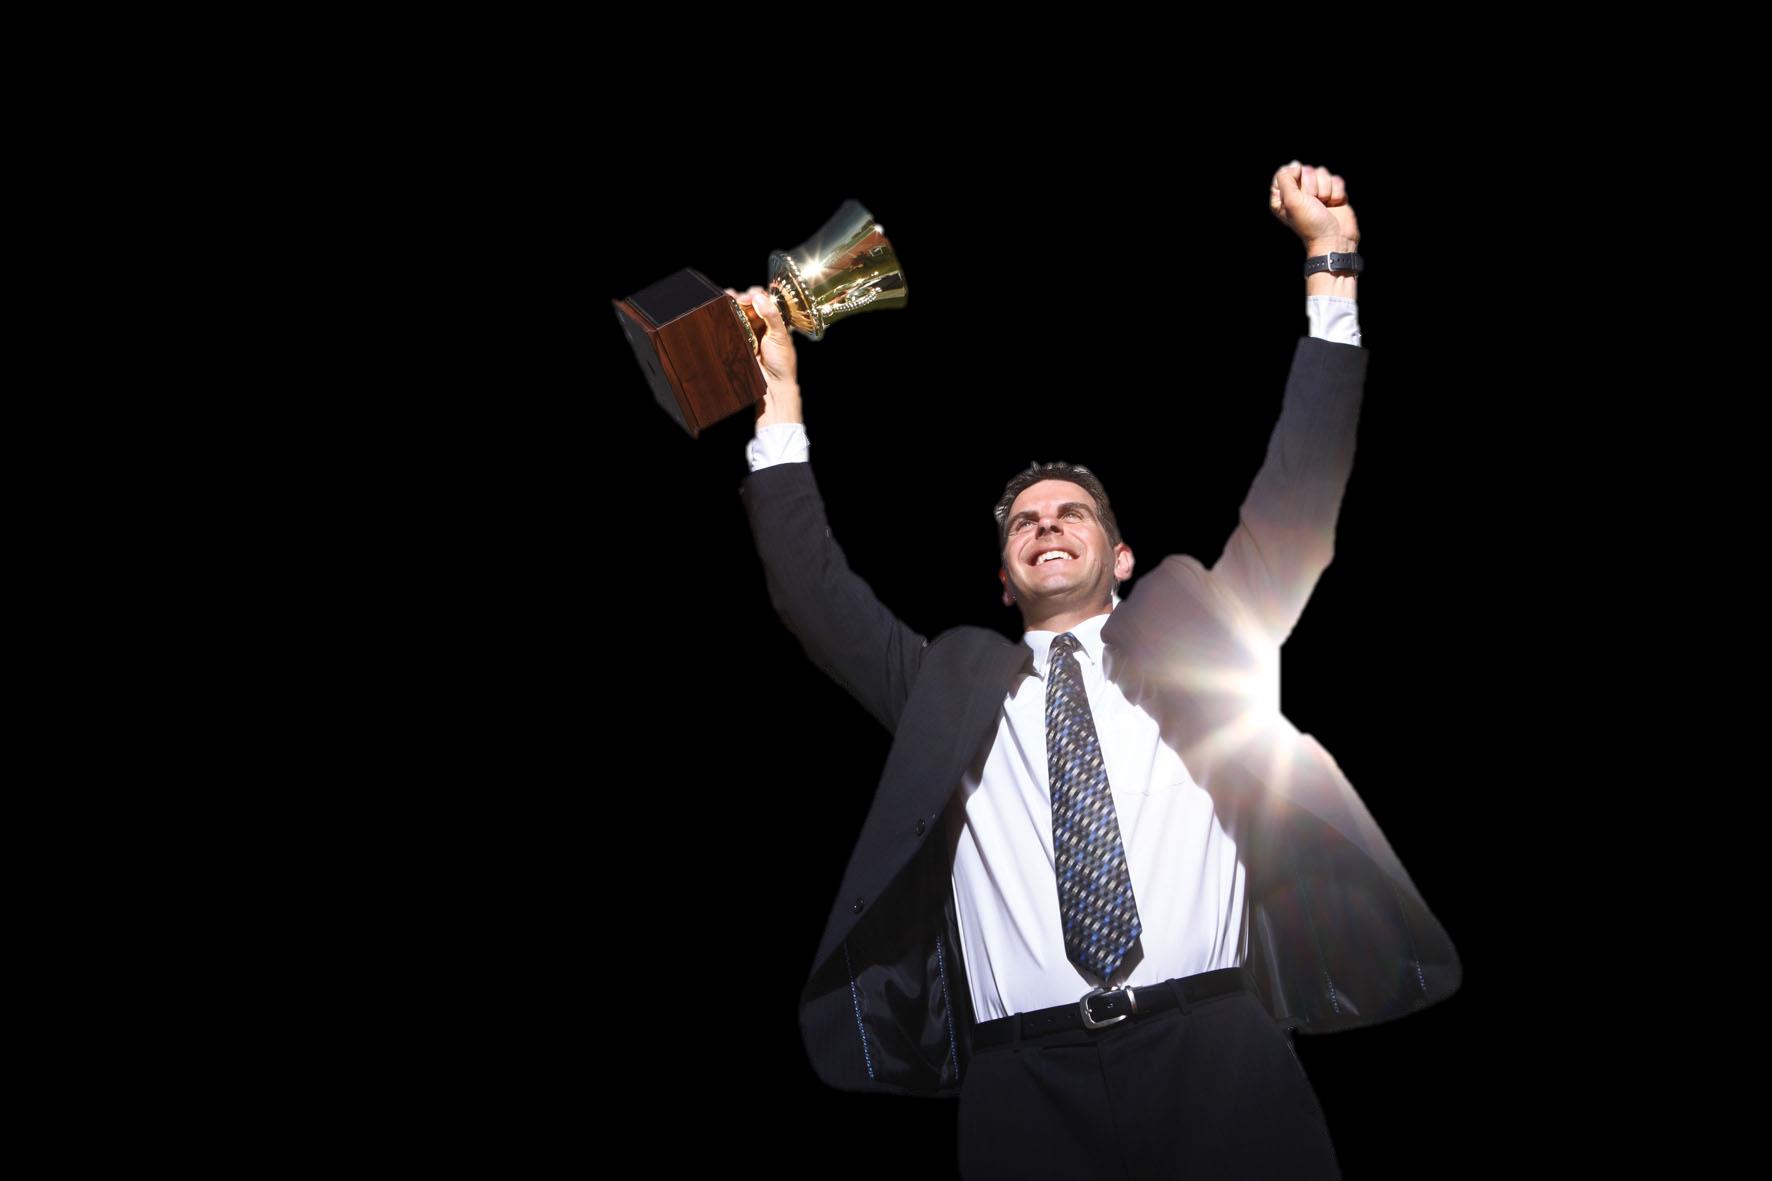 1 Dicas para se tornar um líder de sucesso Supere as expectativas: Um líder de sucesso busca ir